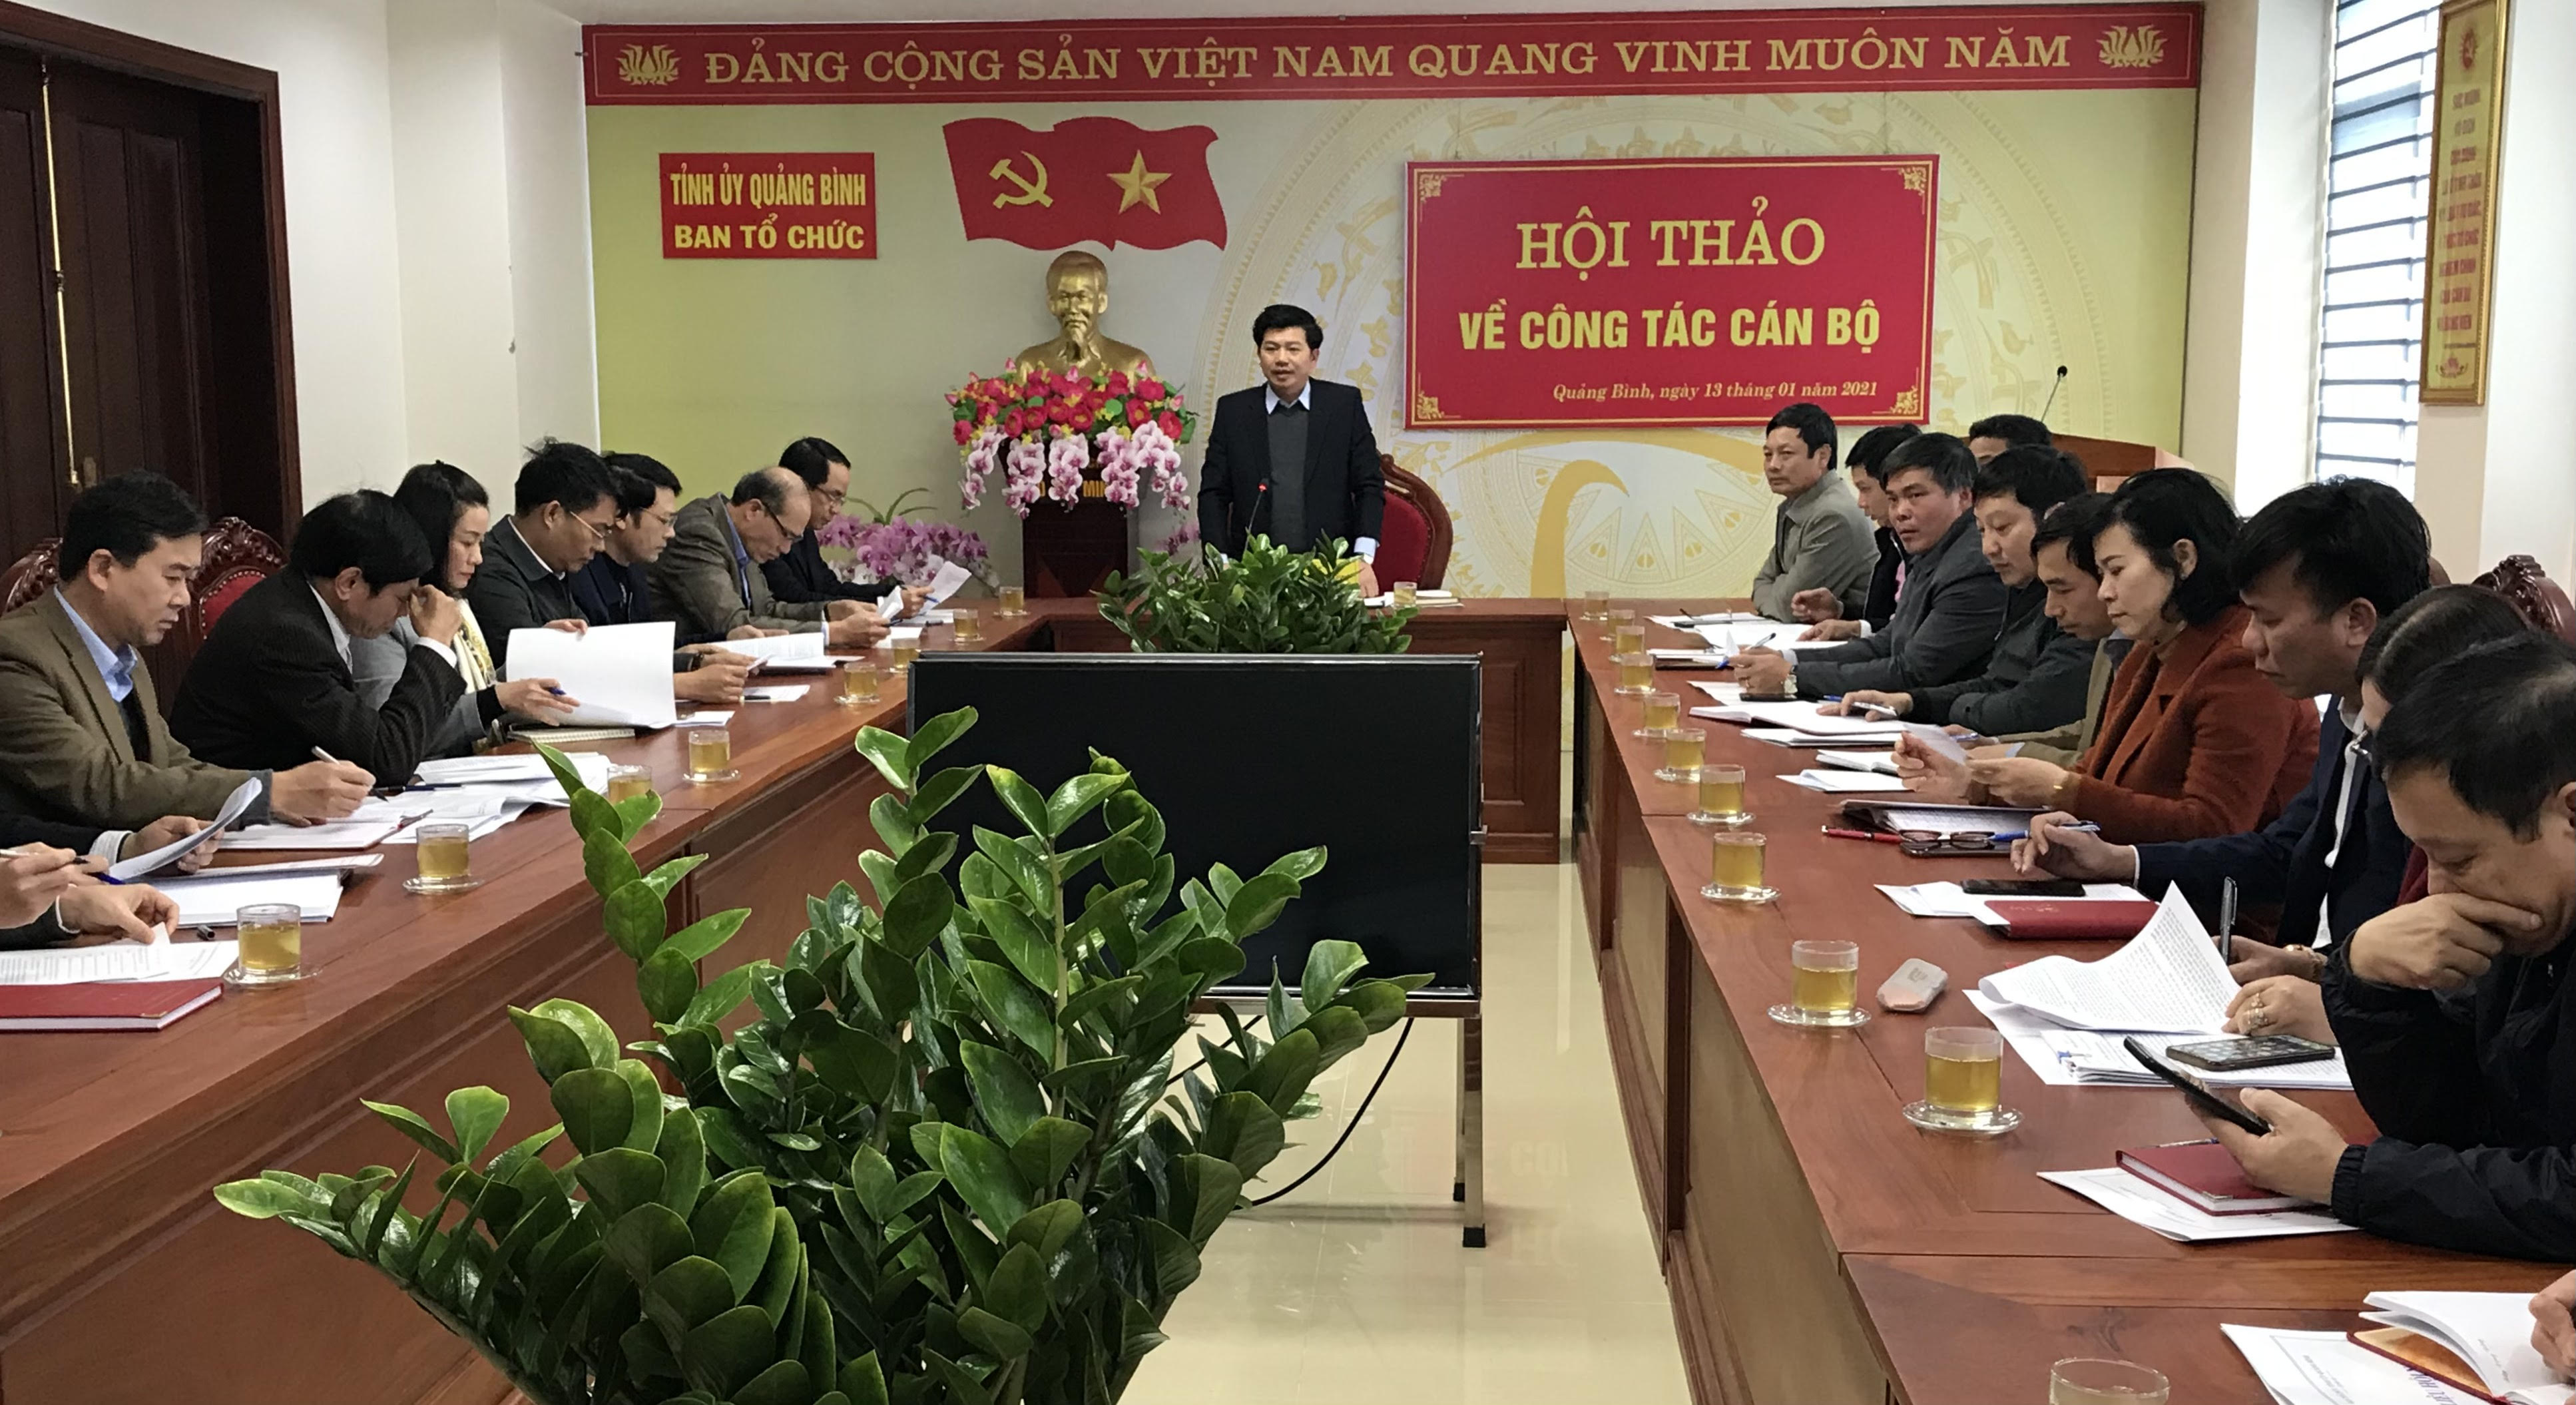 Đồng chí Trưởng ban Tổ chức Tỉnh ủy Trần Vũ Khiêm chủ trì hội thảo.